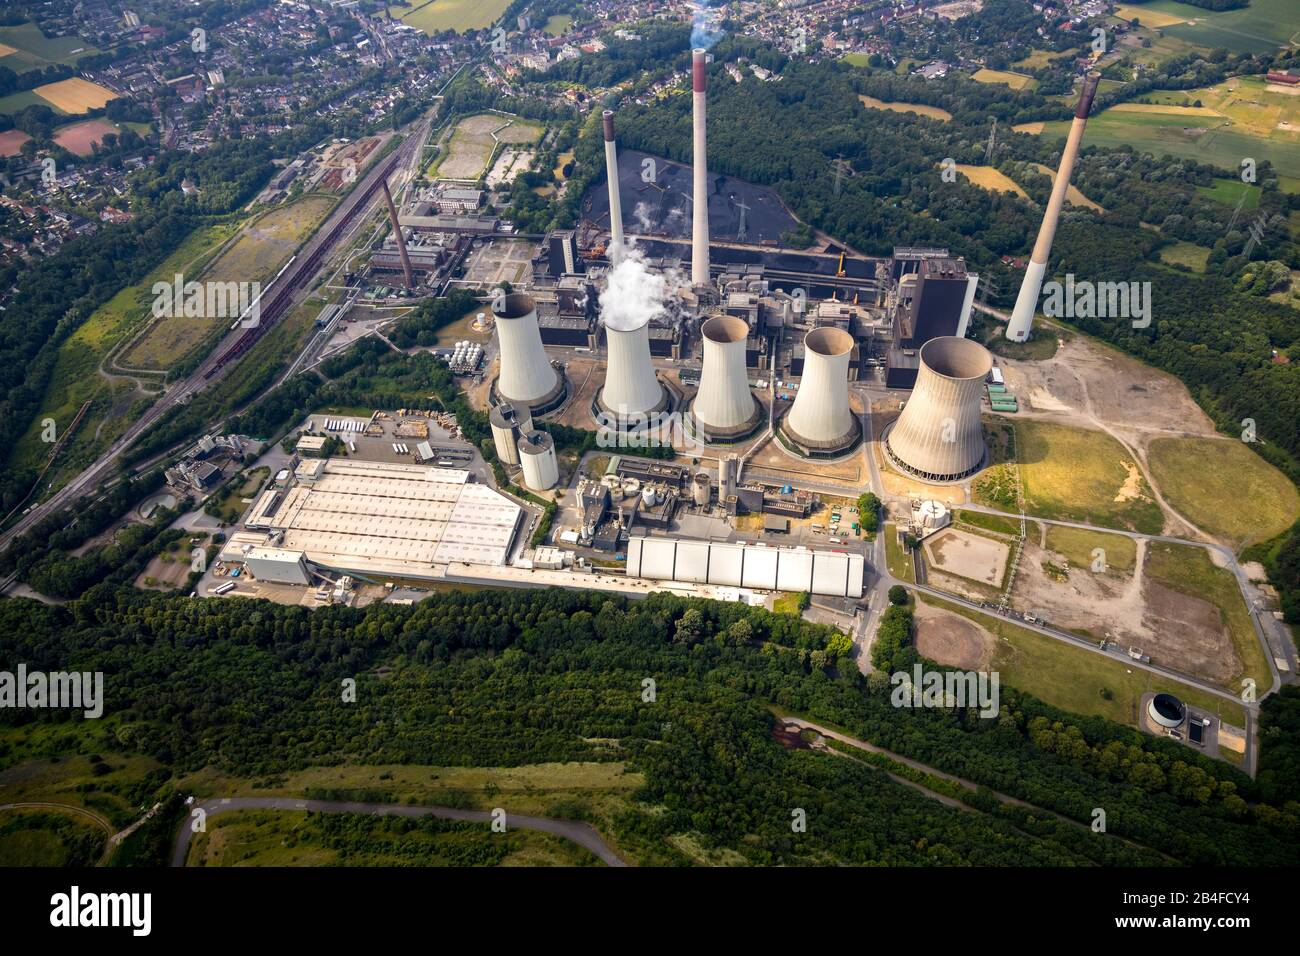 Vista aérea de la central eléctrica Scholven, Uniper power plants GmbH en Gelsenkirchen en la zona de Ruhr en el estado federal de Renania del Norte-Westfalia en Alemania, Gelsenkirchen, Ruhr área, Renania del Norte-Westfalia, Alemania, área comercial, desarrollo económico Gelsenkirchen, área industrial Foto de stock